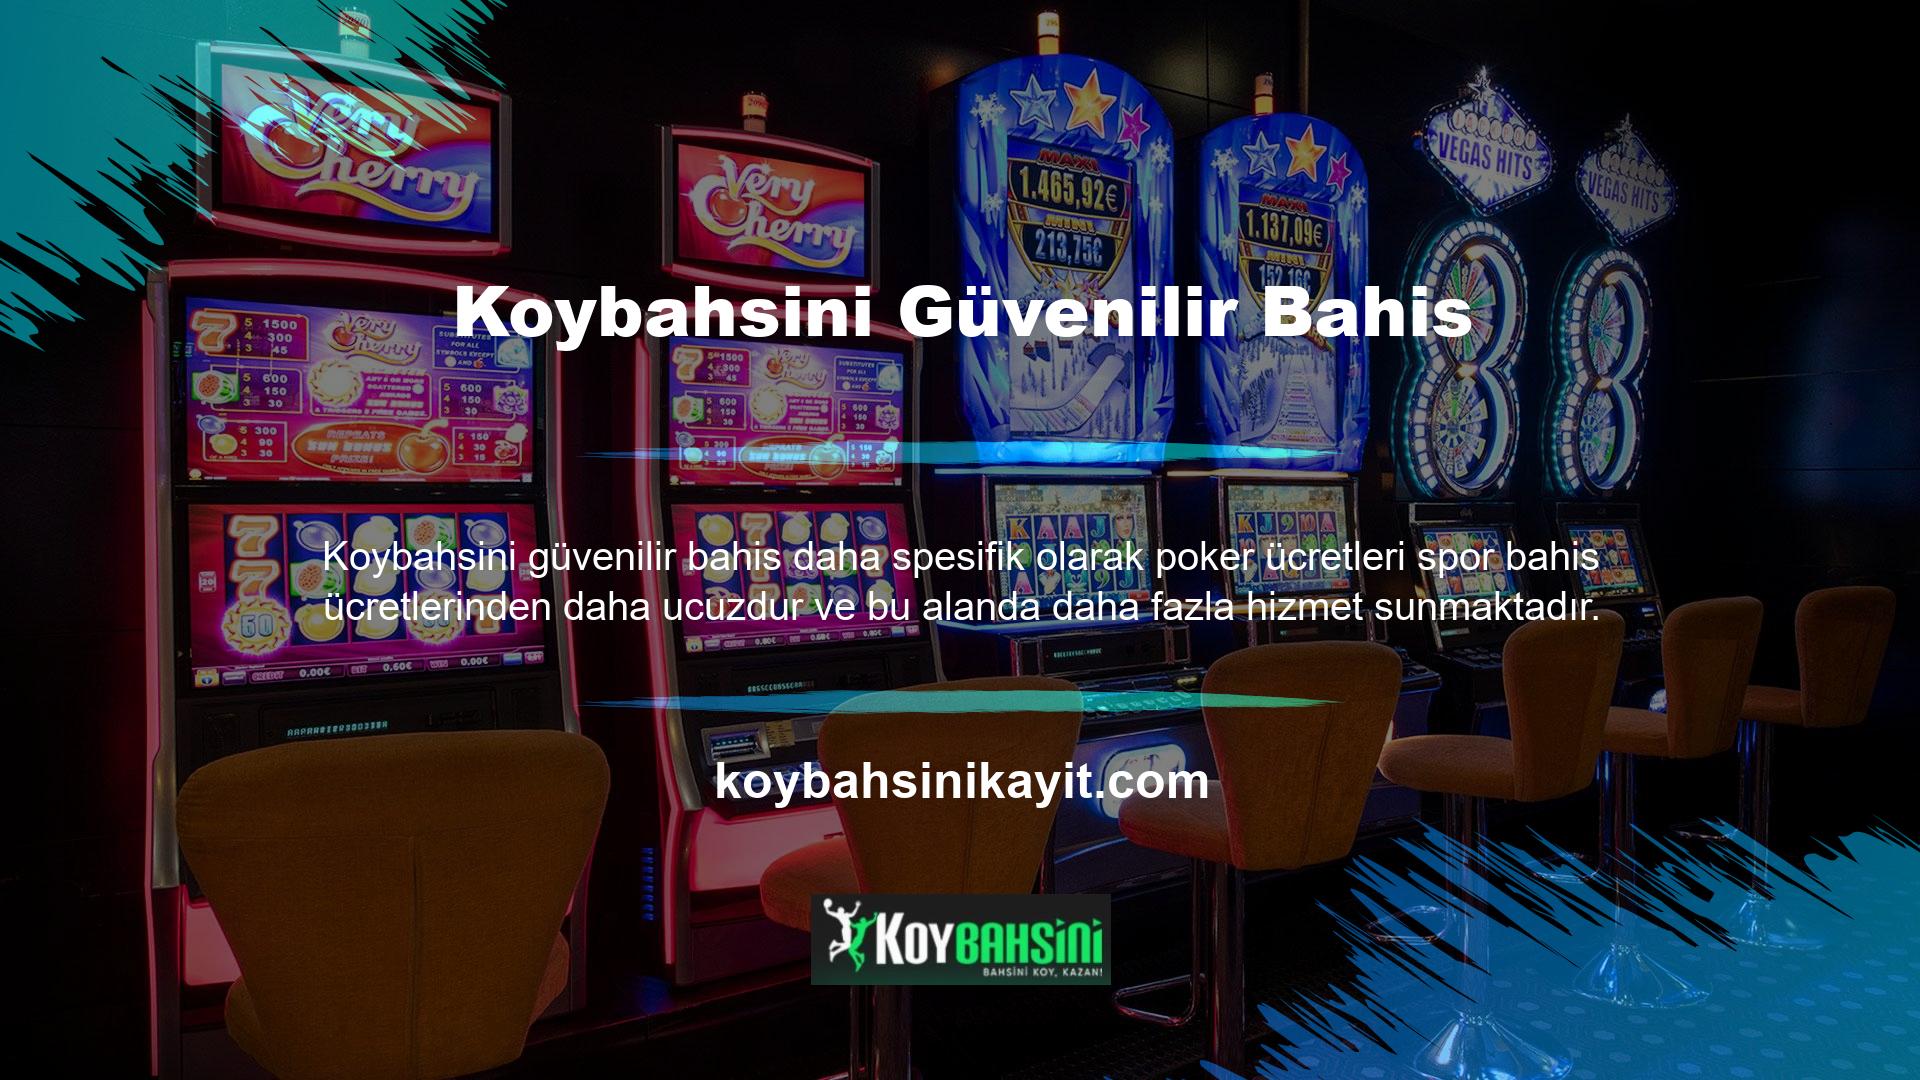 Bu Koybahsini bahis sitesindeki ilk güvenilir bahis yöntemleri, çoğu yurt dışı bahis sitesinde bulunan para transferleri ve mobil bankacılıktır